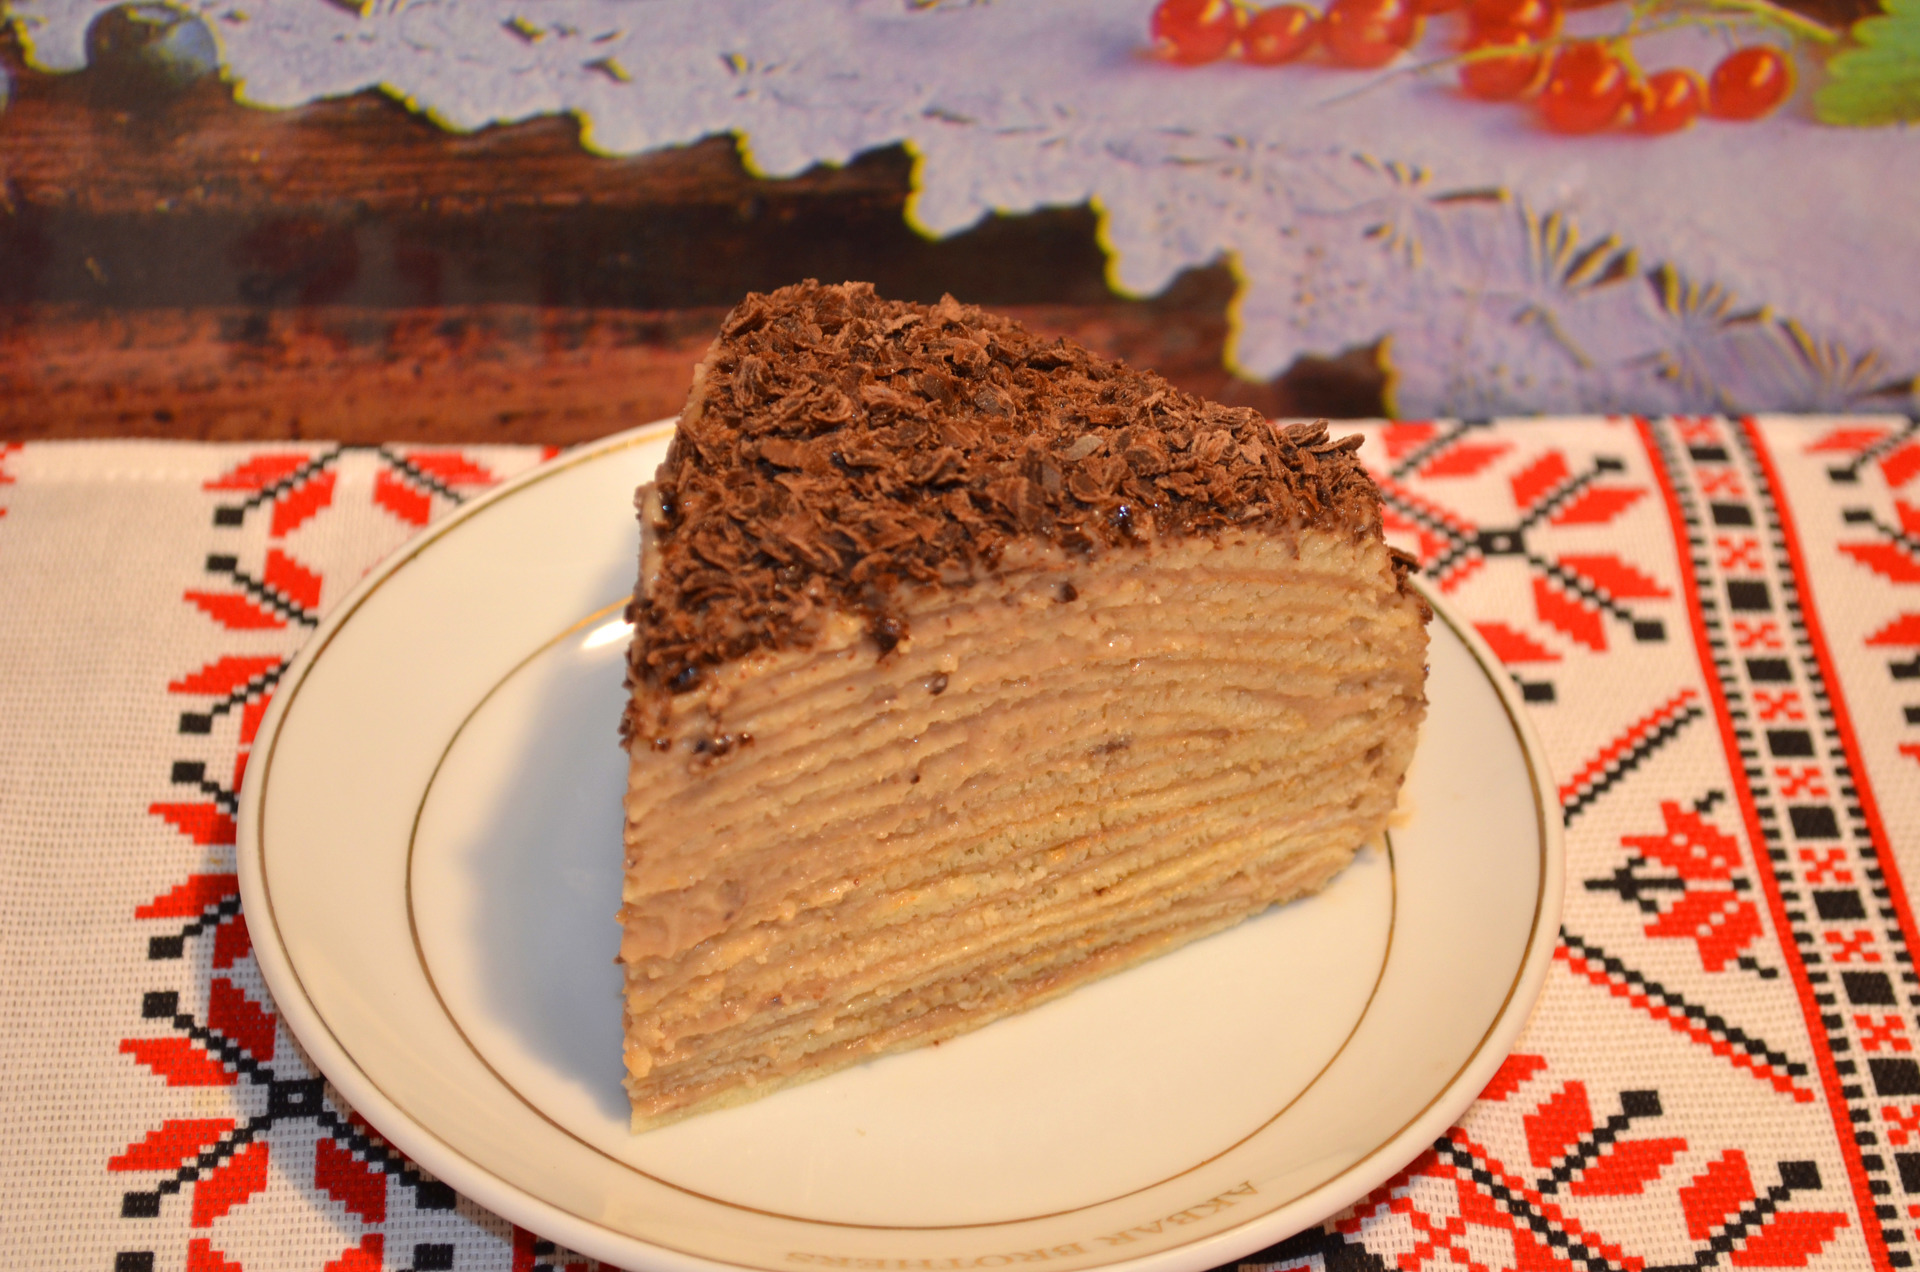 Фото к рецепту: Блинный торт с заварным кремом. как наполеон.